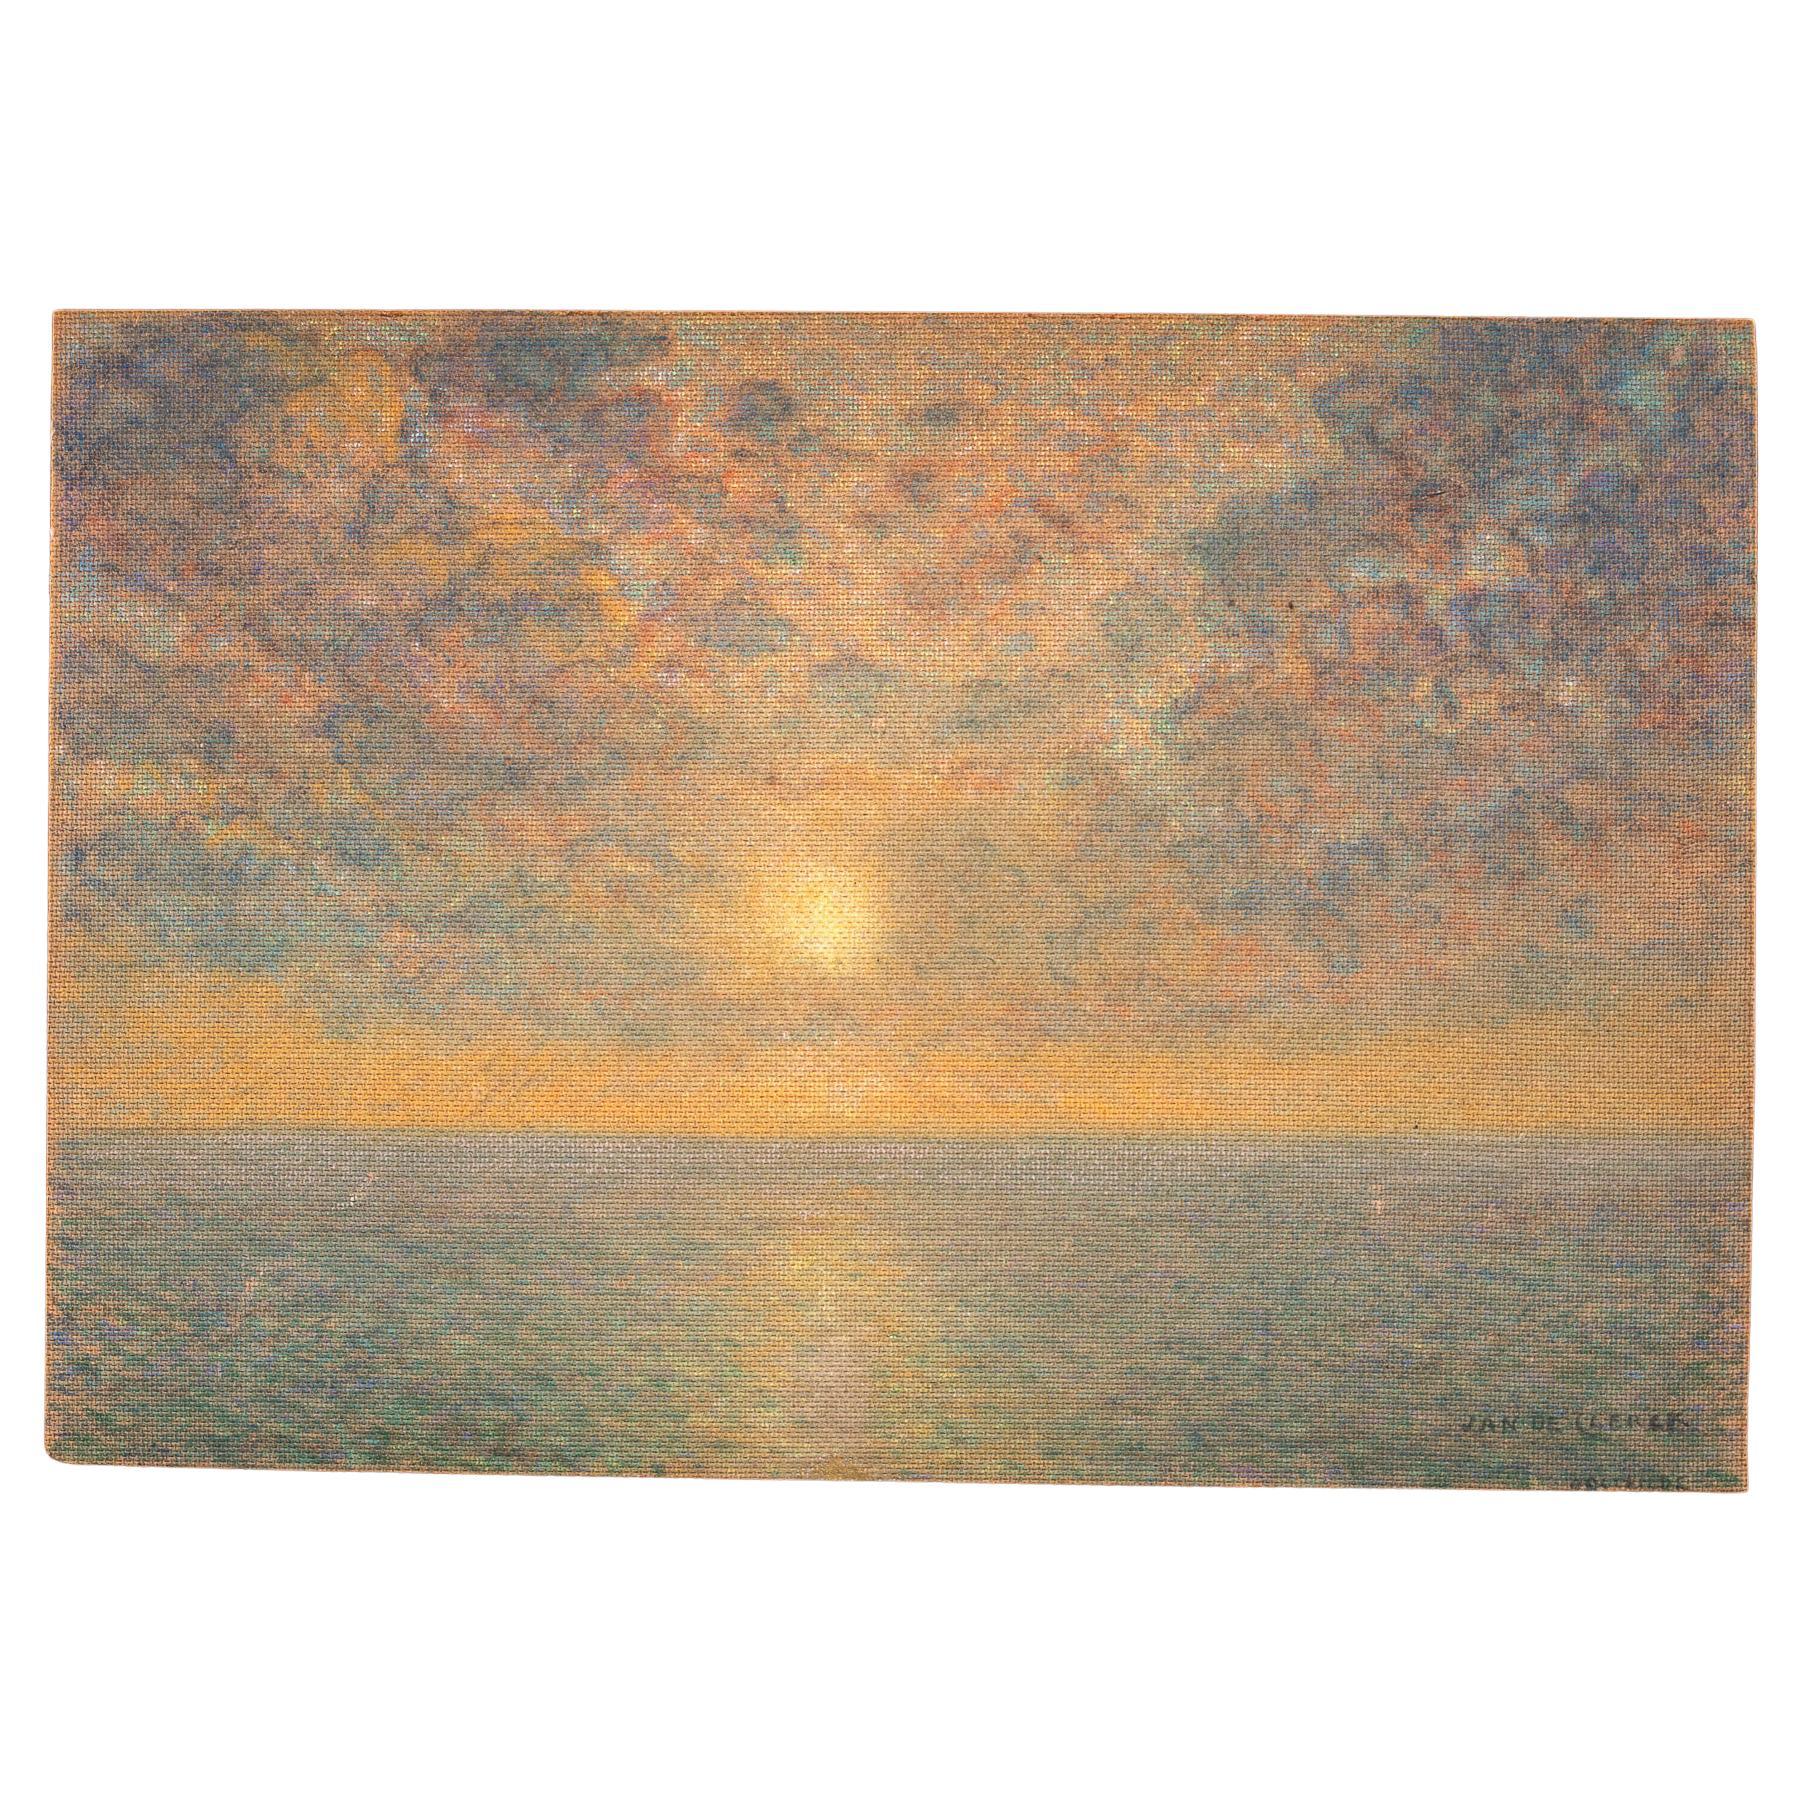 Sunset over the Sea, Jan de Clerck '1891-1964'